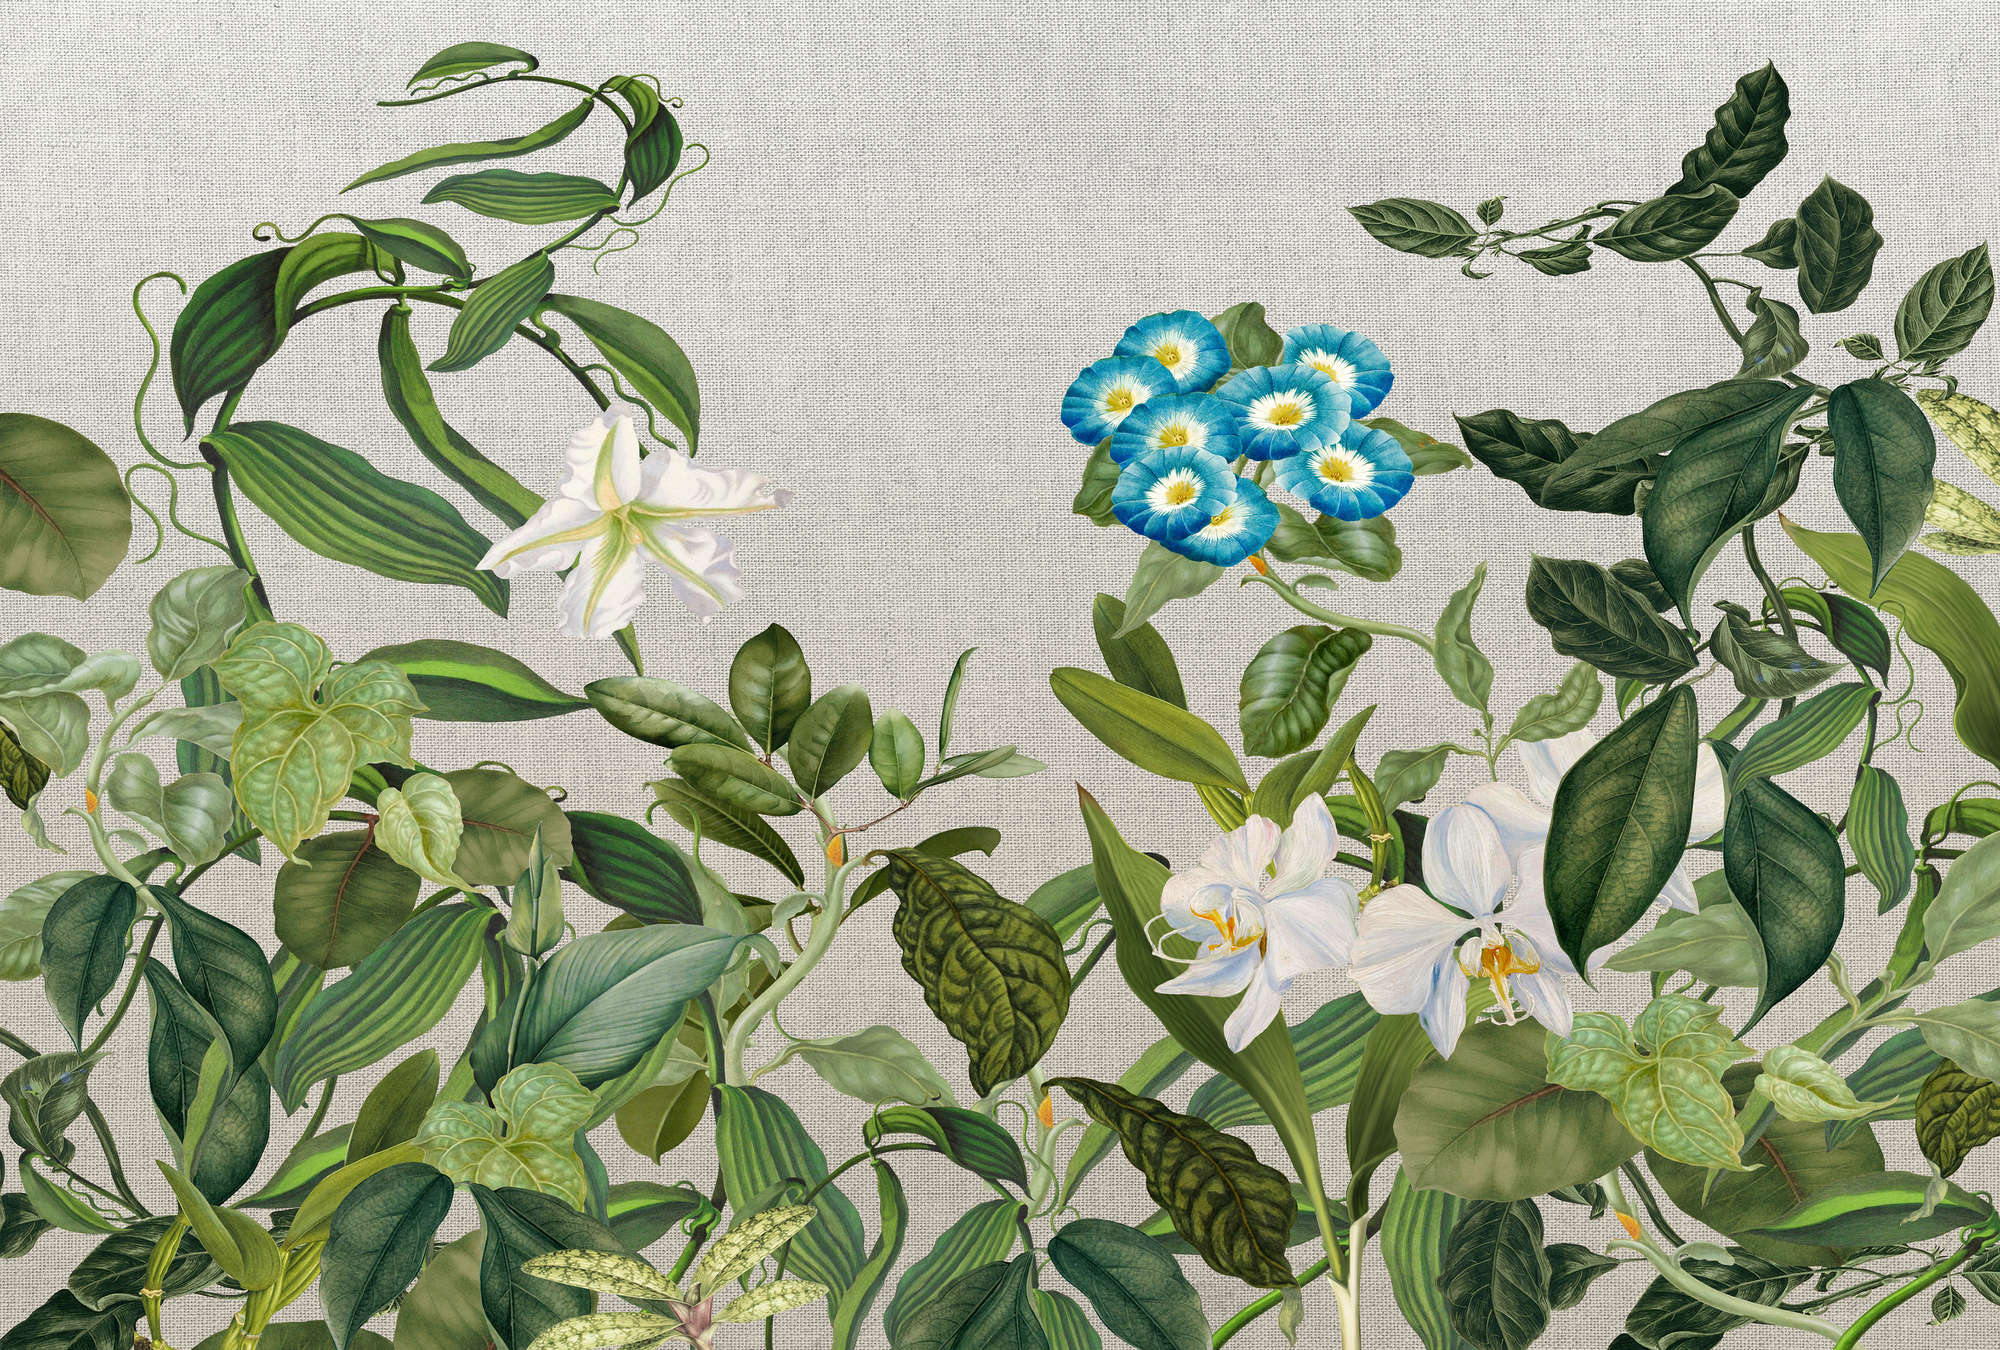             Muurschildering met bloemen, bladeren & textiel look - groen, grijs, blauw
        